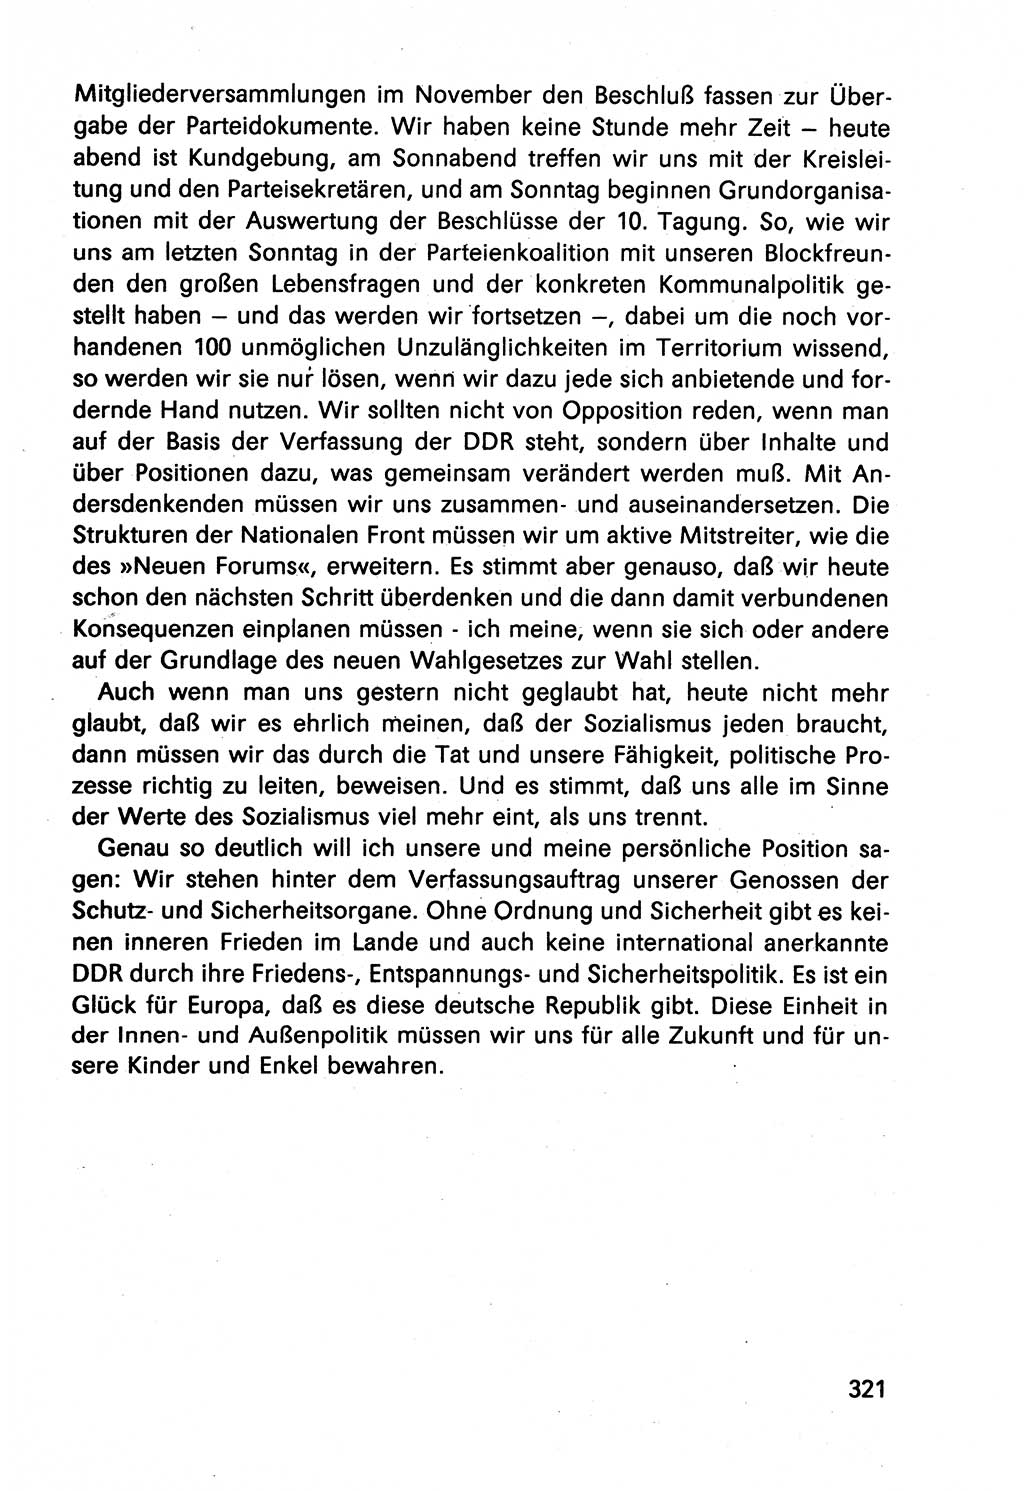 Diskussionsbeiträge, 10. Tagung des ZK (Zentralkomitee) der SED (Sozialistische Einheitspartei Deutschlands) [Deutsche Demokratische Republik (DDR)] 1989, Seite 321 (Disk.-Beitr. 10. Tg. ZK SED DDR 1989, S. 321)